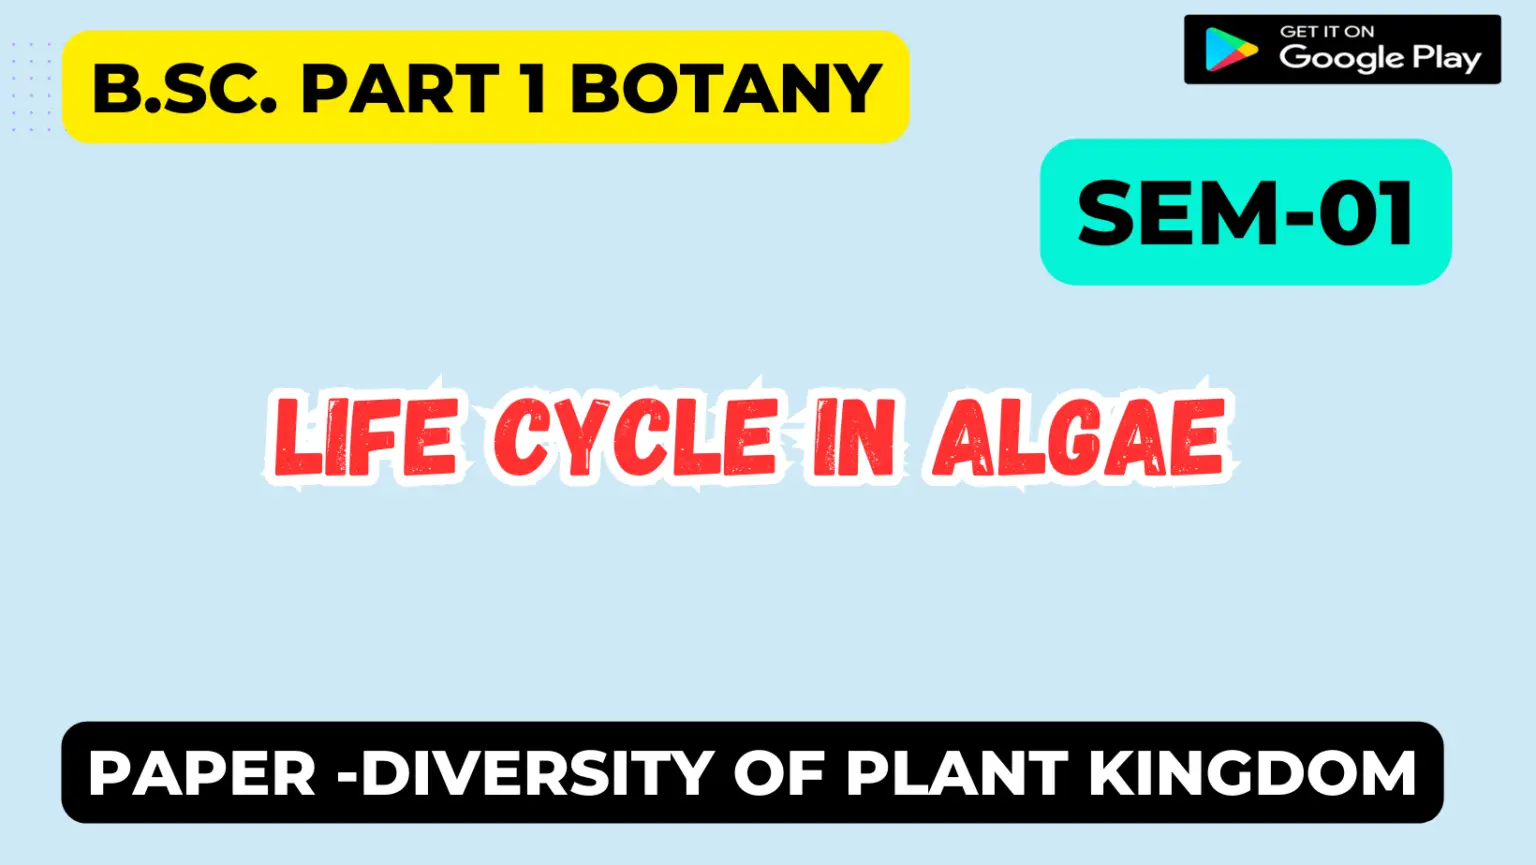 Life cycle in algae